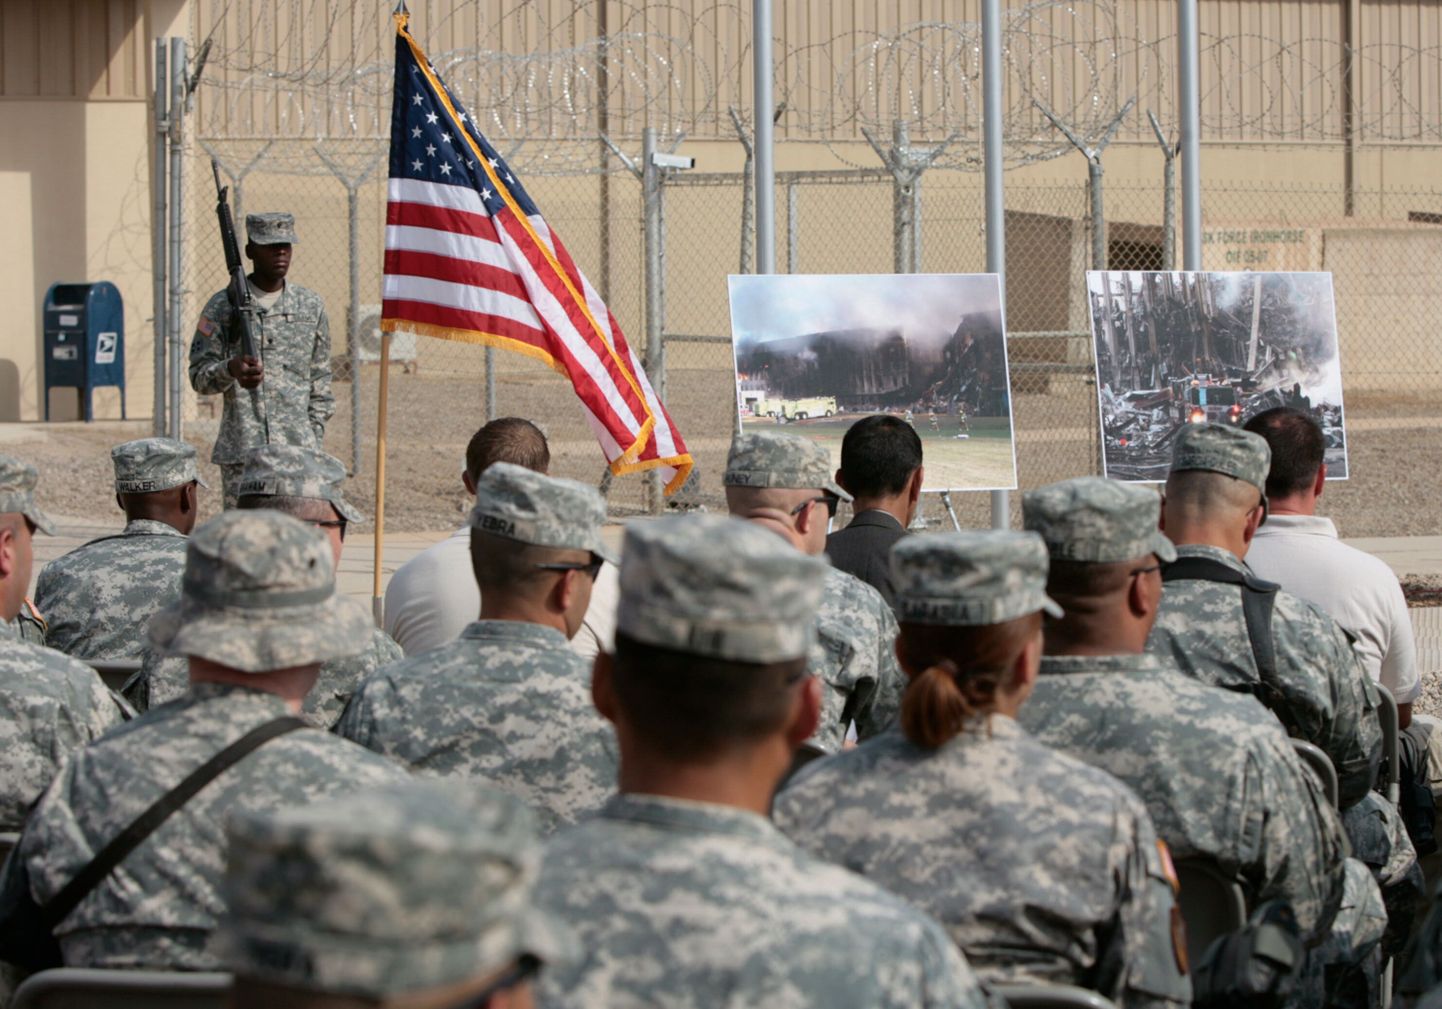 USA sõdurid Iraagis Baghdadis mälestamas 11. septembri 2001. aasta terrorirünnakus hukkunuid.